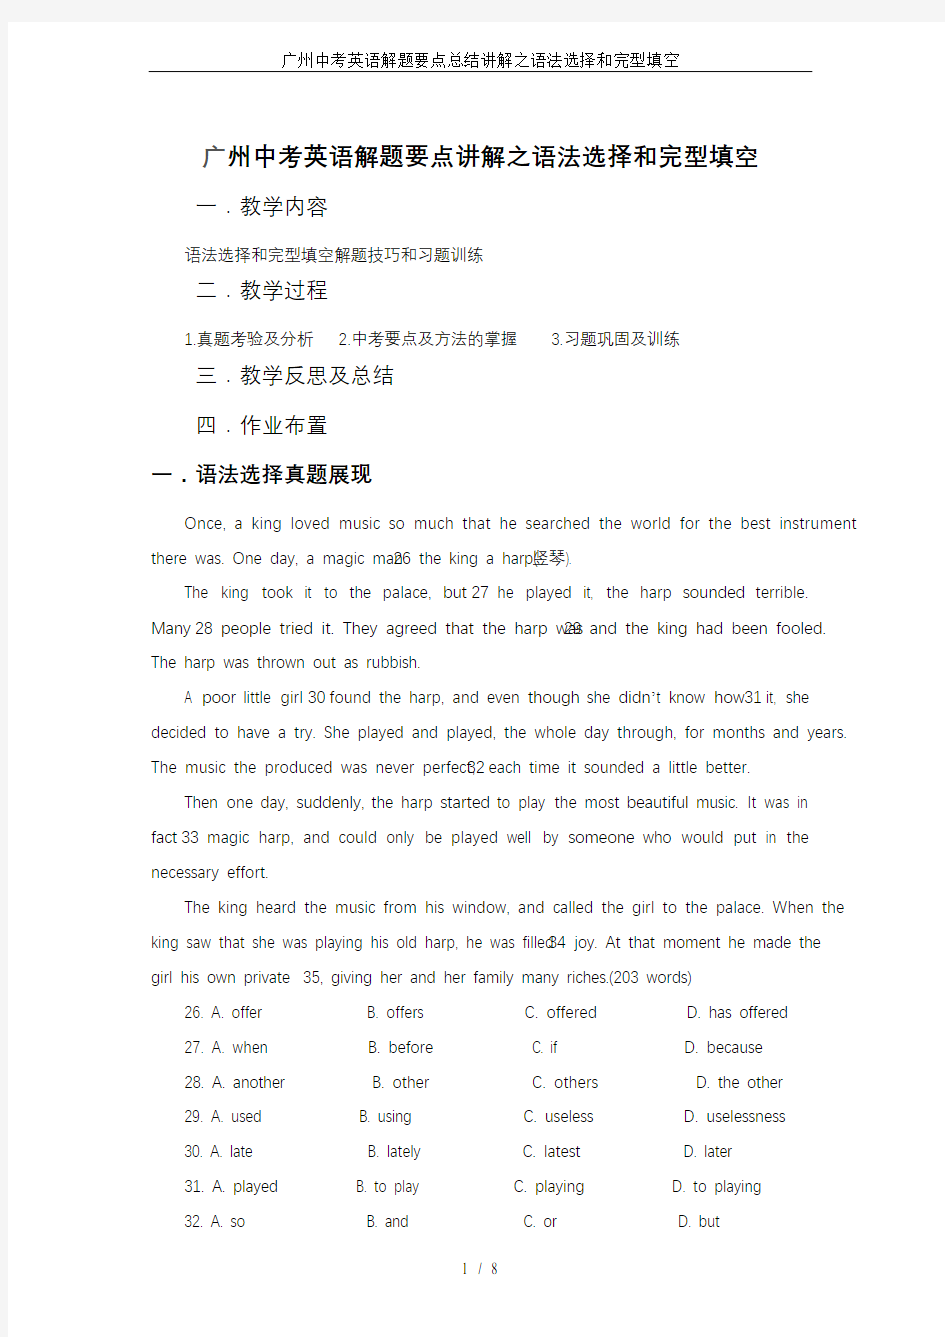 广州中考英语解题要点总结讲解之语法选择和完型填空